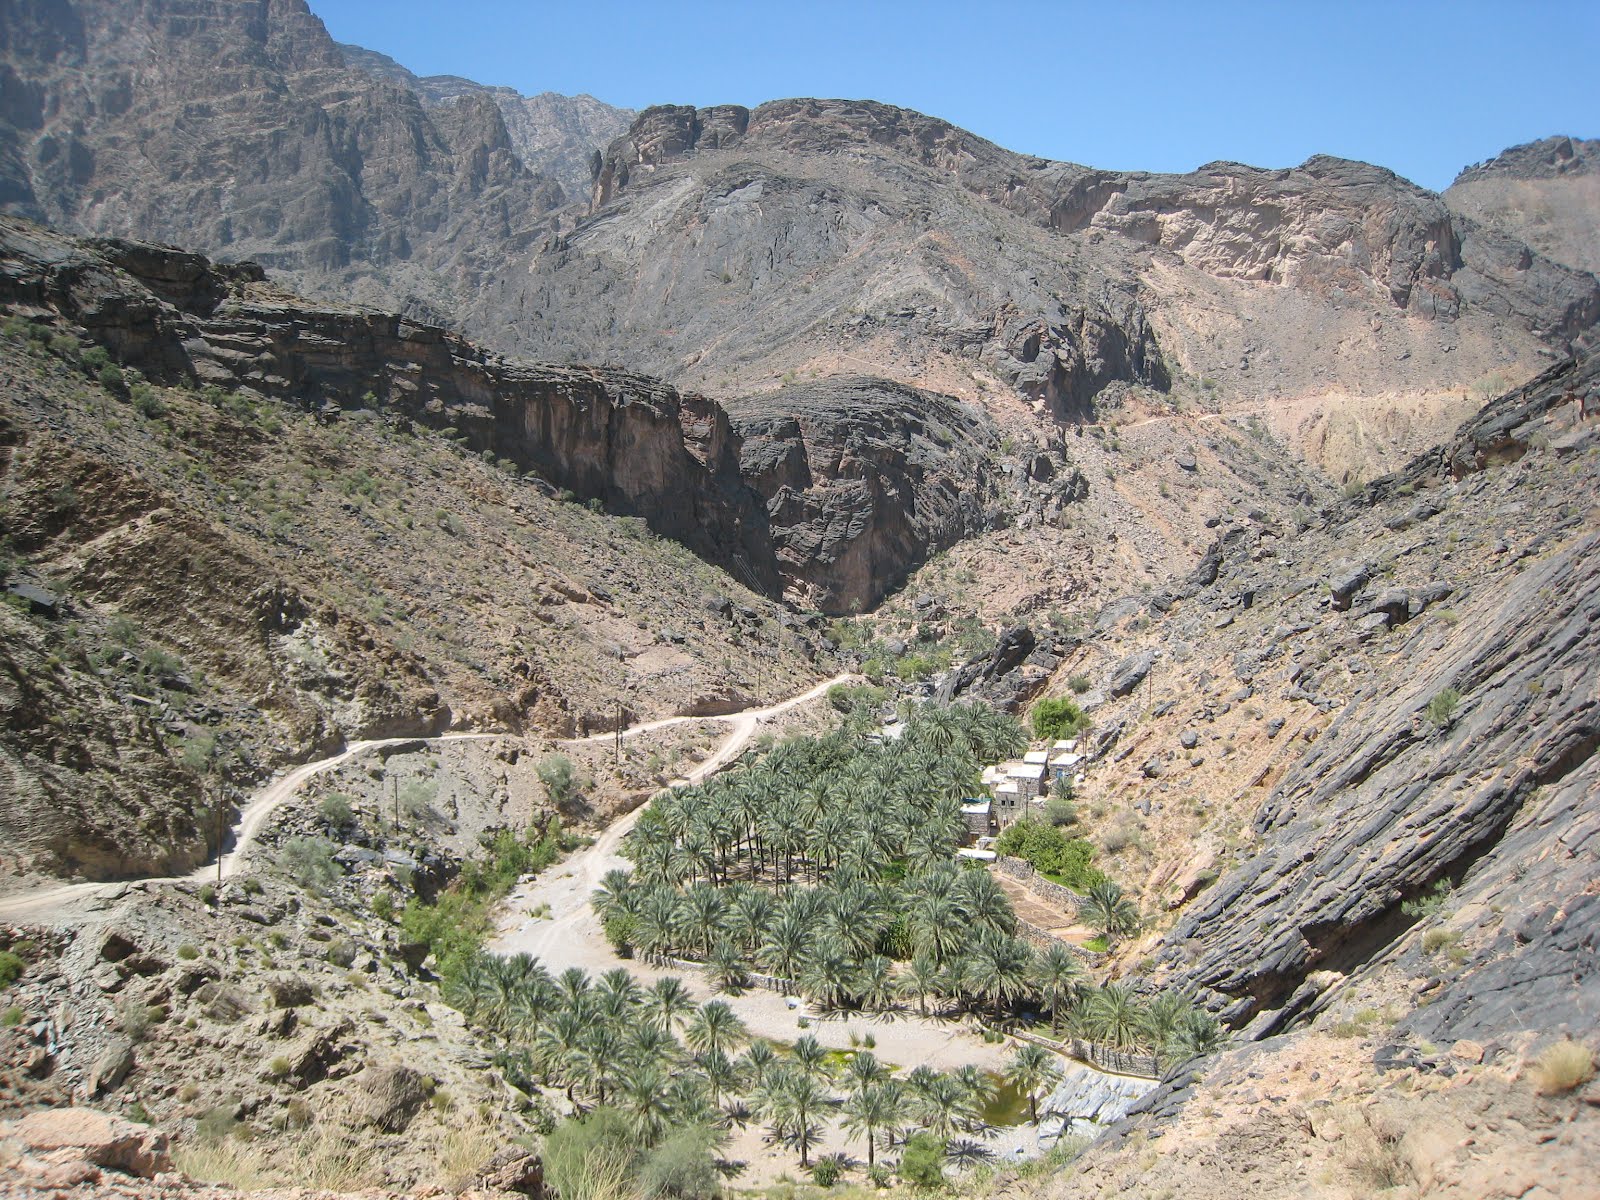 Oman expat: Wadi Bani Awf